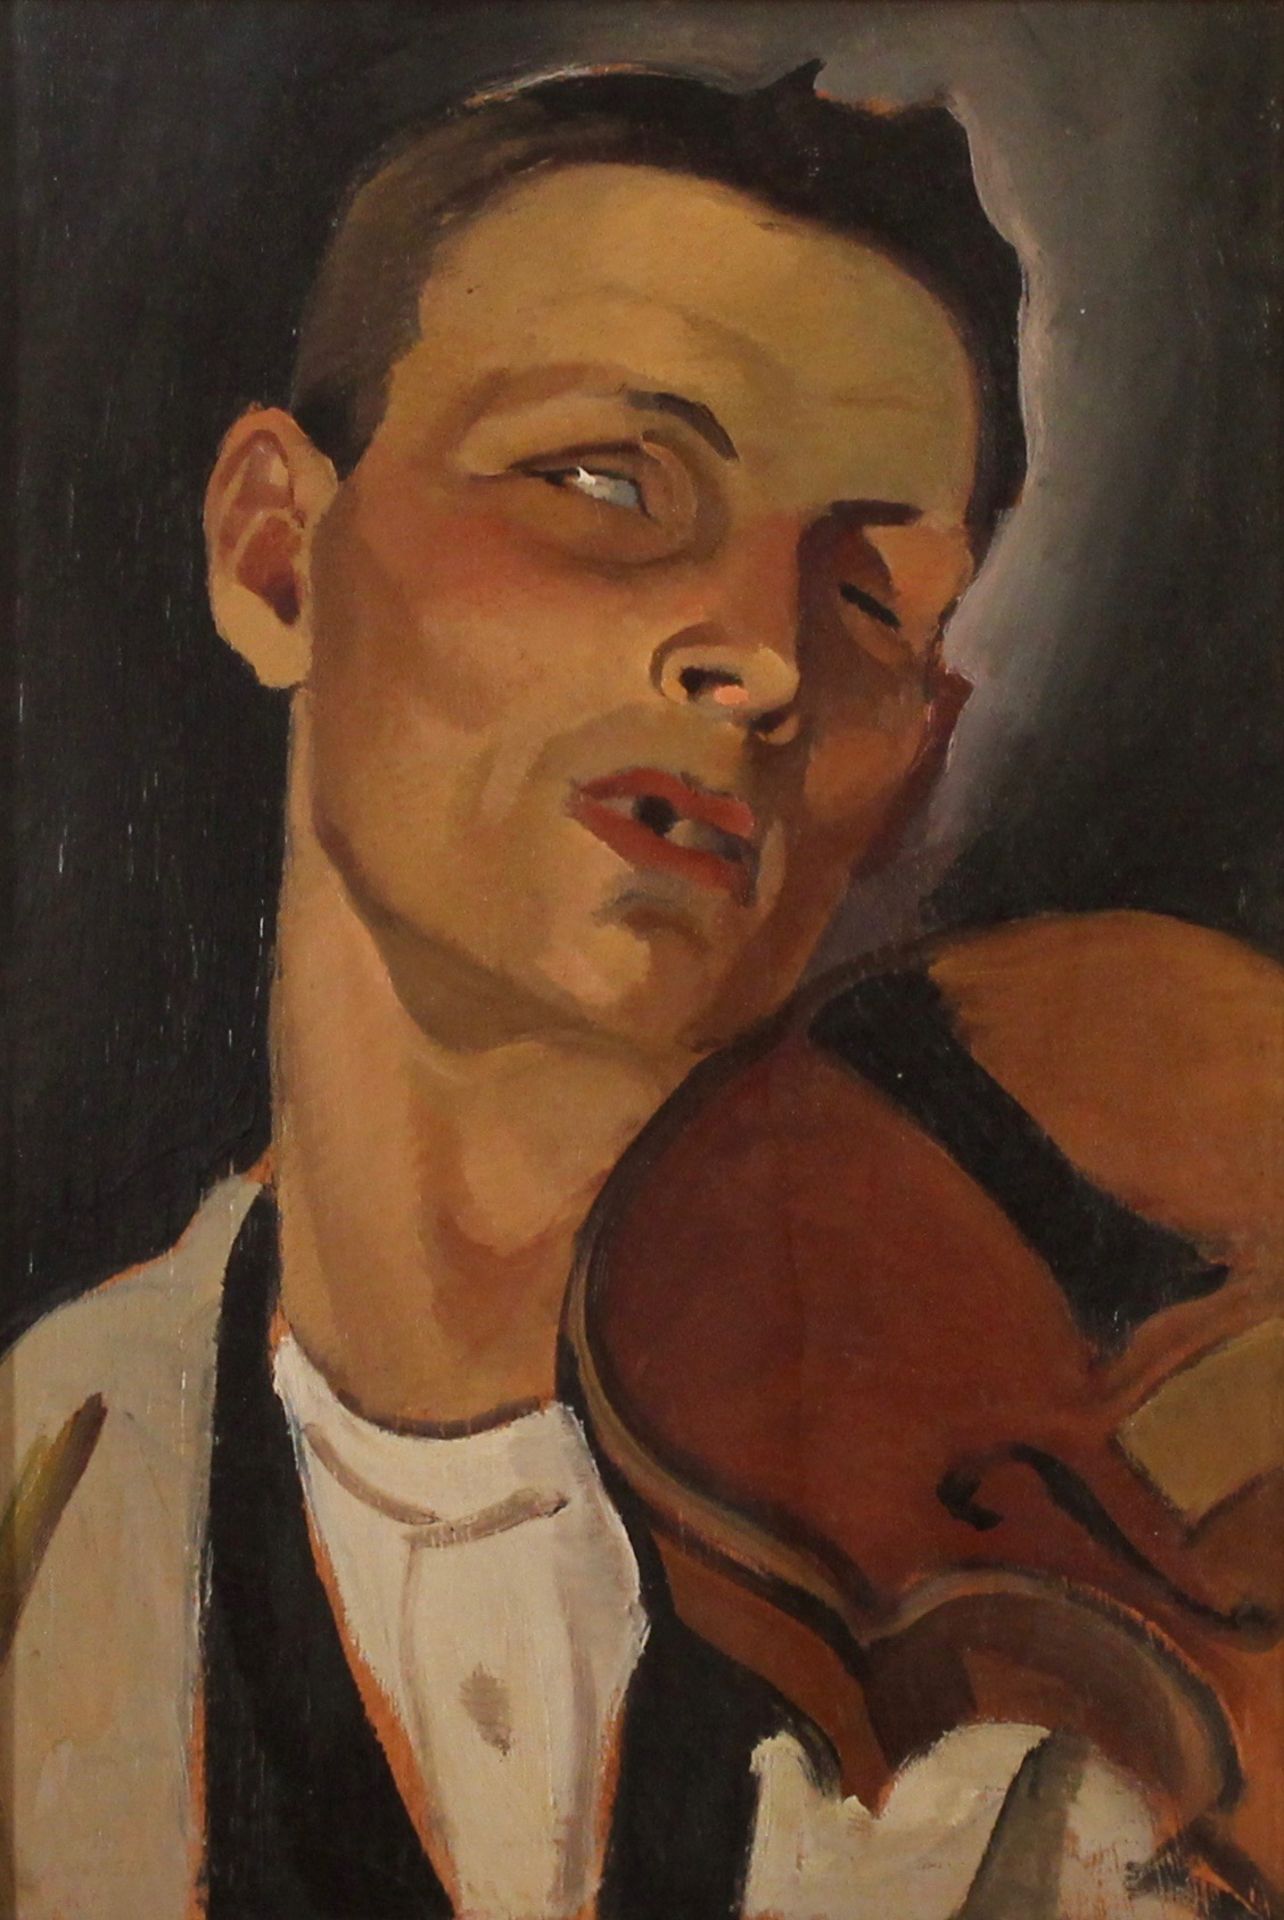 ALFONSO AMORELLI (1898/1969) "Il violinista" - "The violinist"